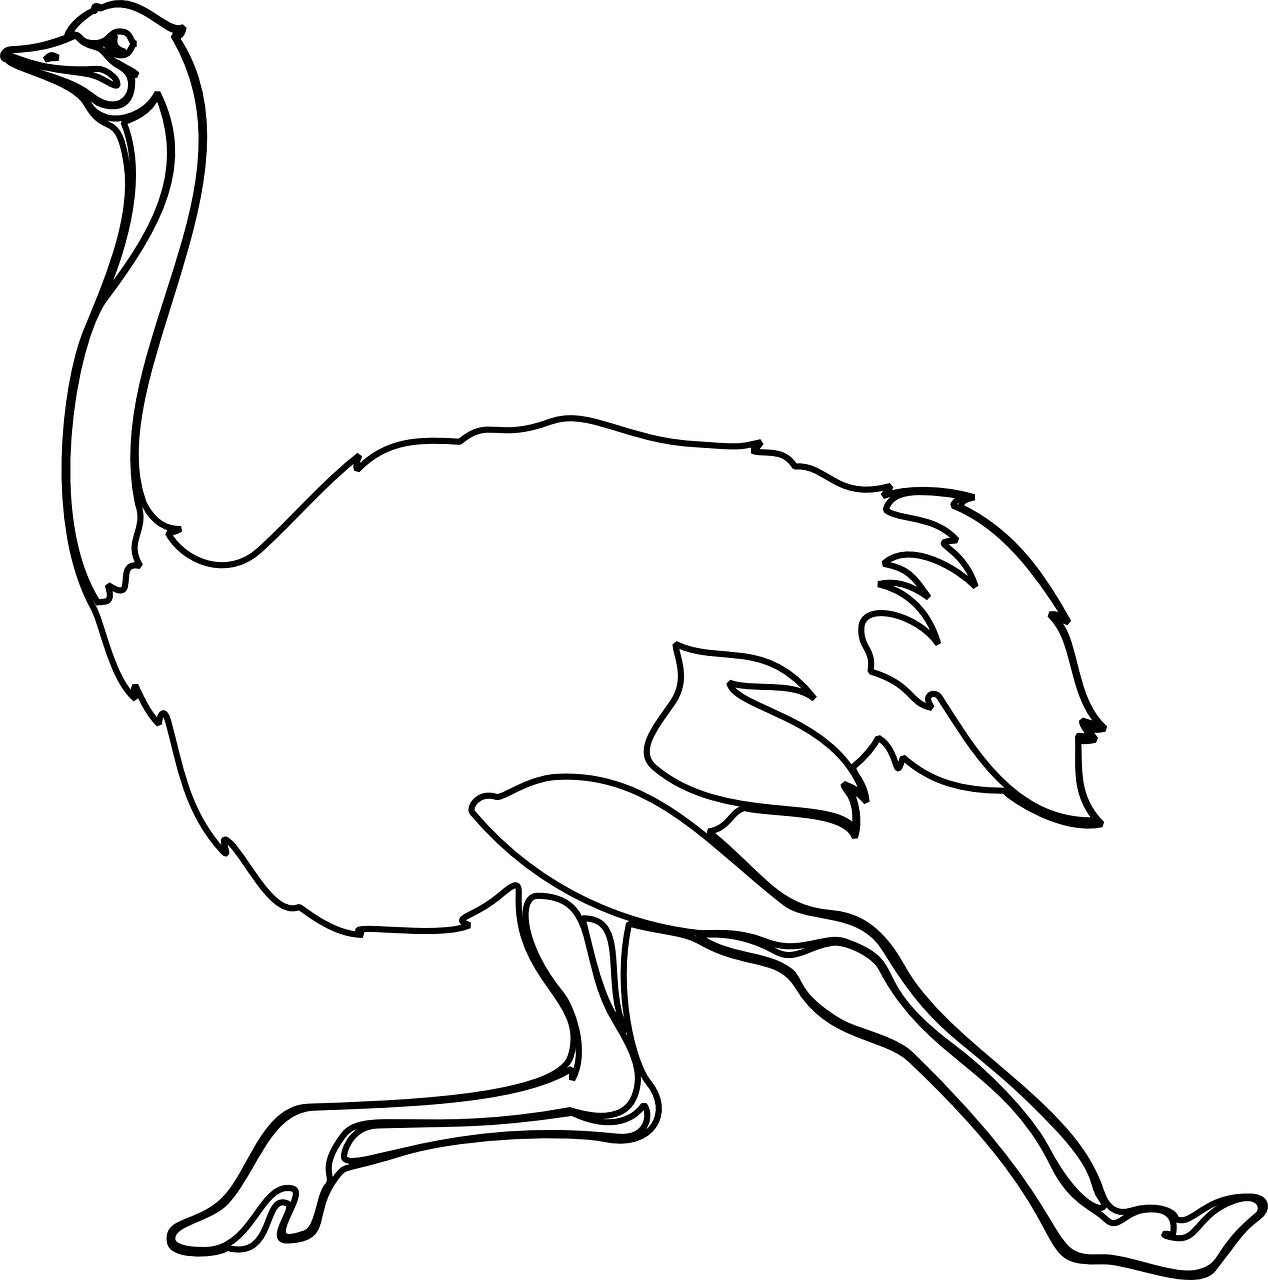 Kleurplaat van een struisvogel